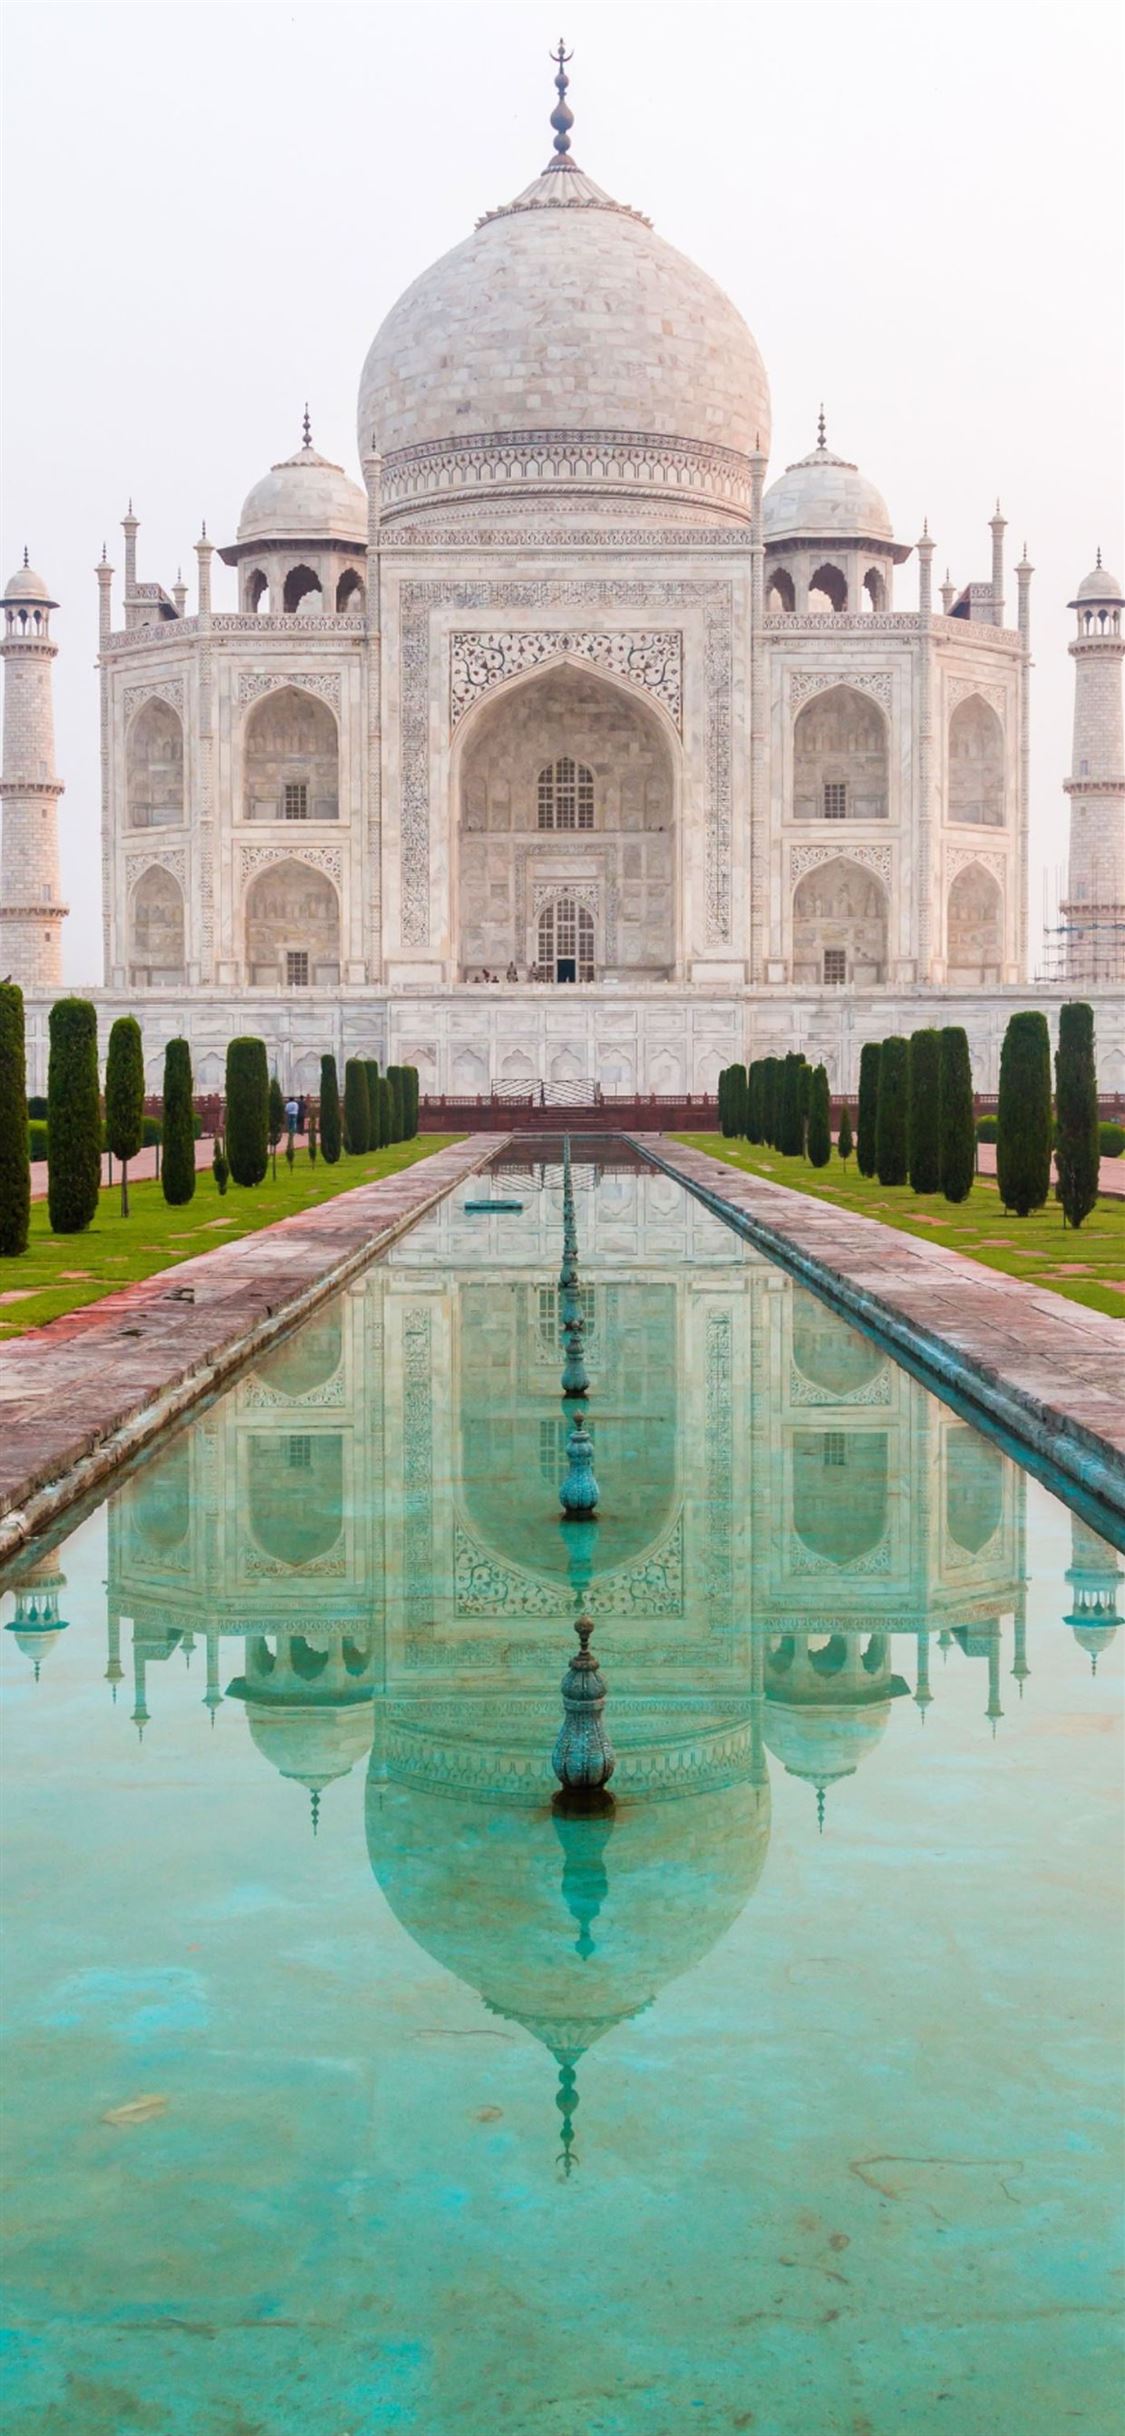 Taj Mahal iPhone Wallpapers - Wallpaper Cave